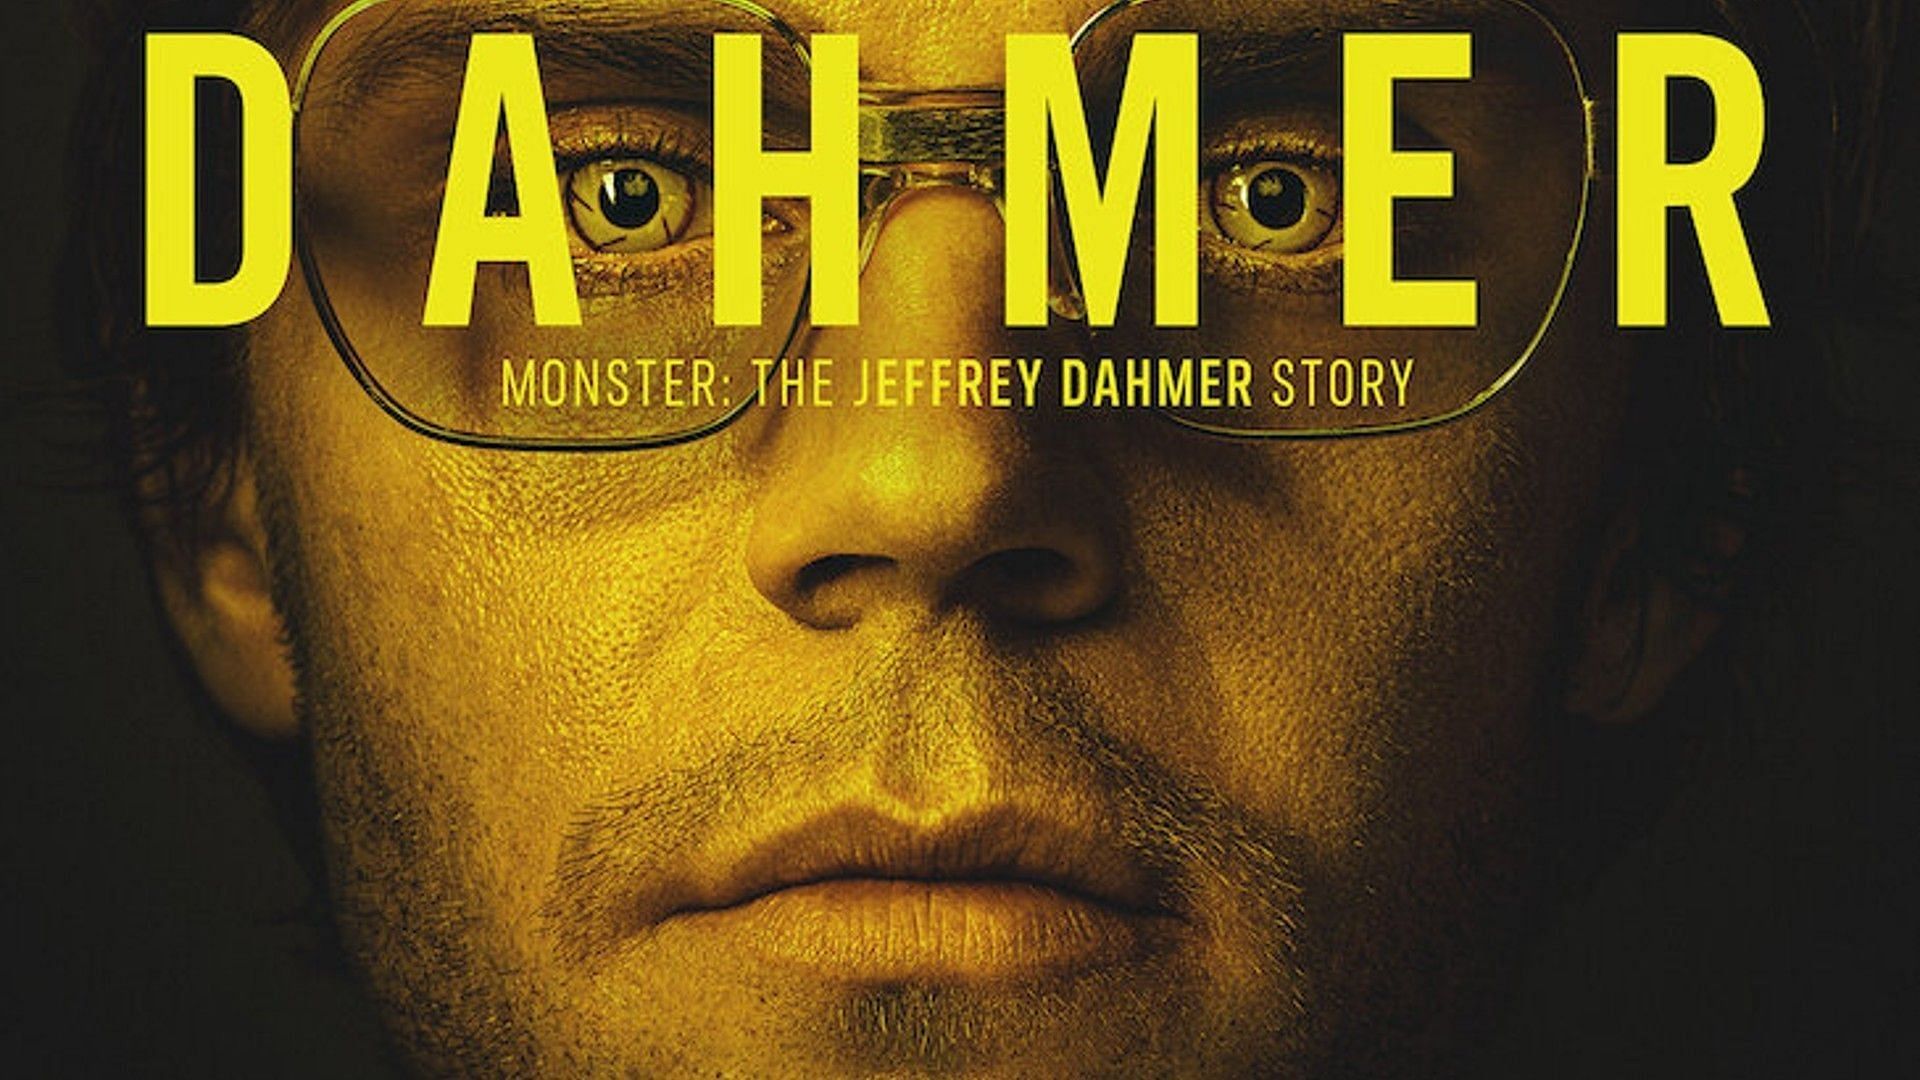 5 lesser-known facts about Jeffrey Dahmer actor Evan Peters (Image via Netflix)